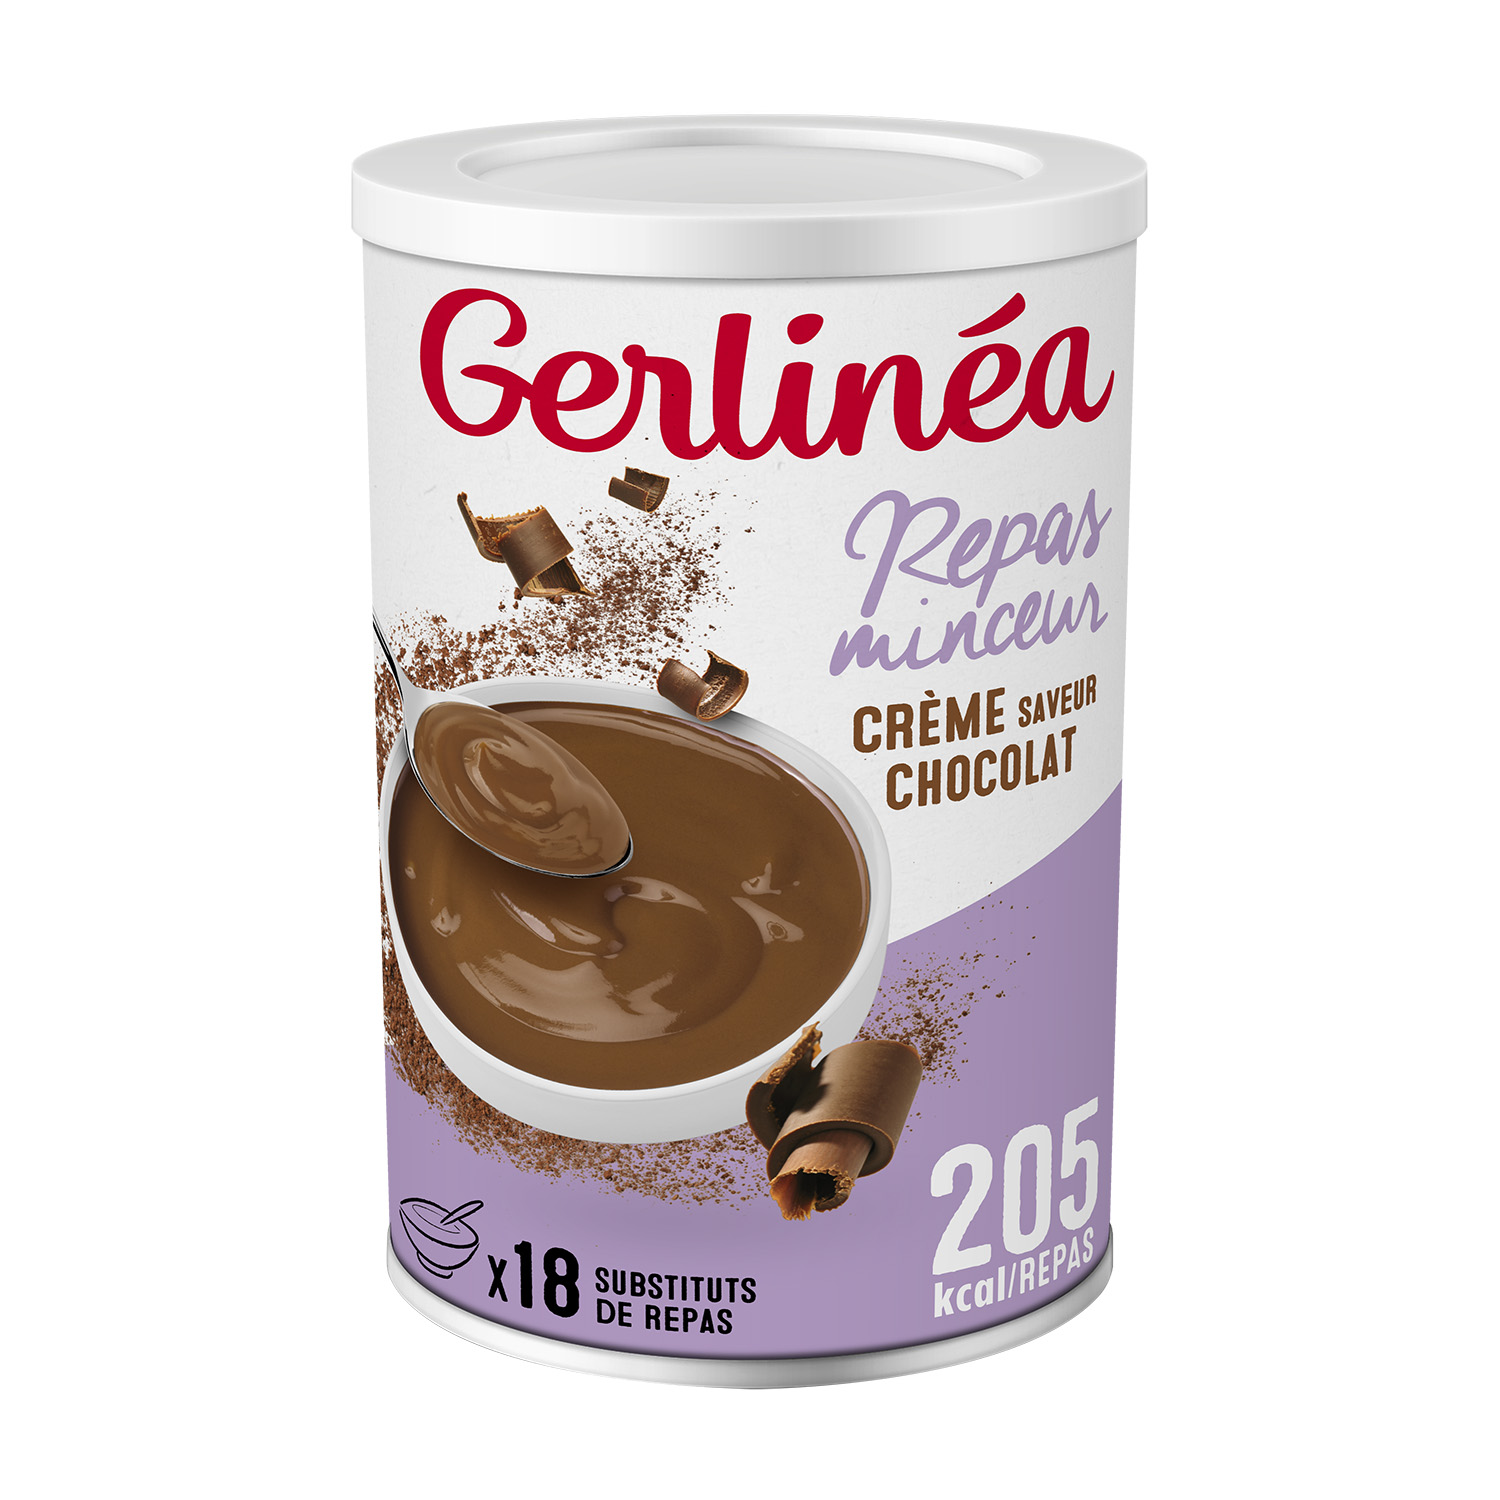 GERLINEA Repas minceur crème saveur chocolat 540g pas cher 